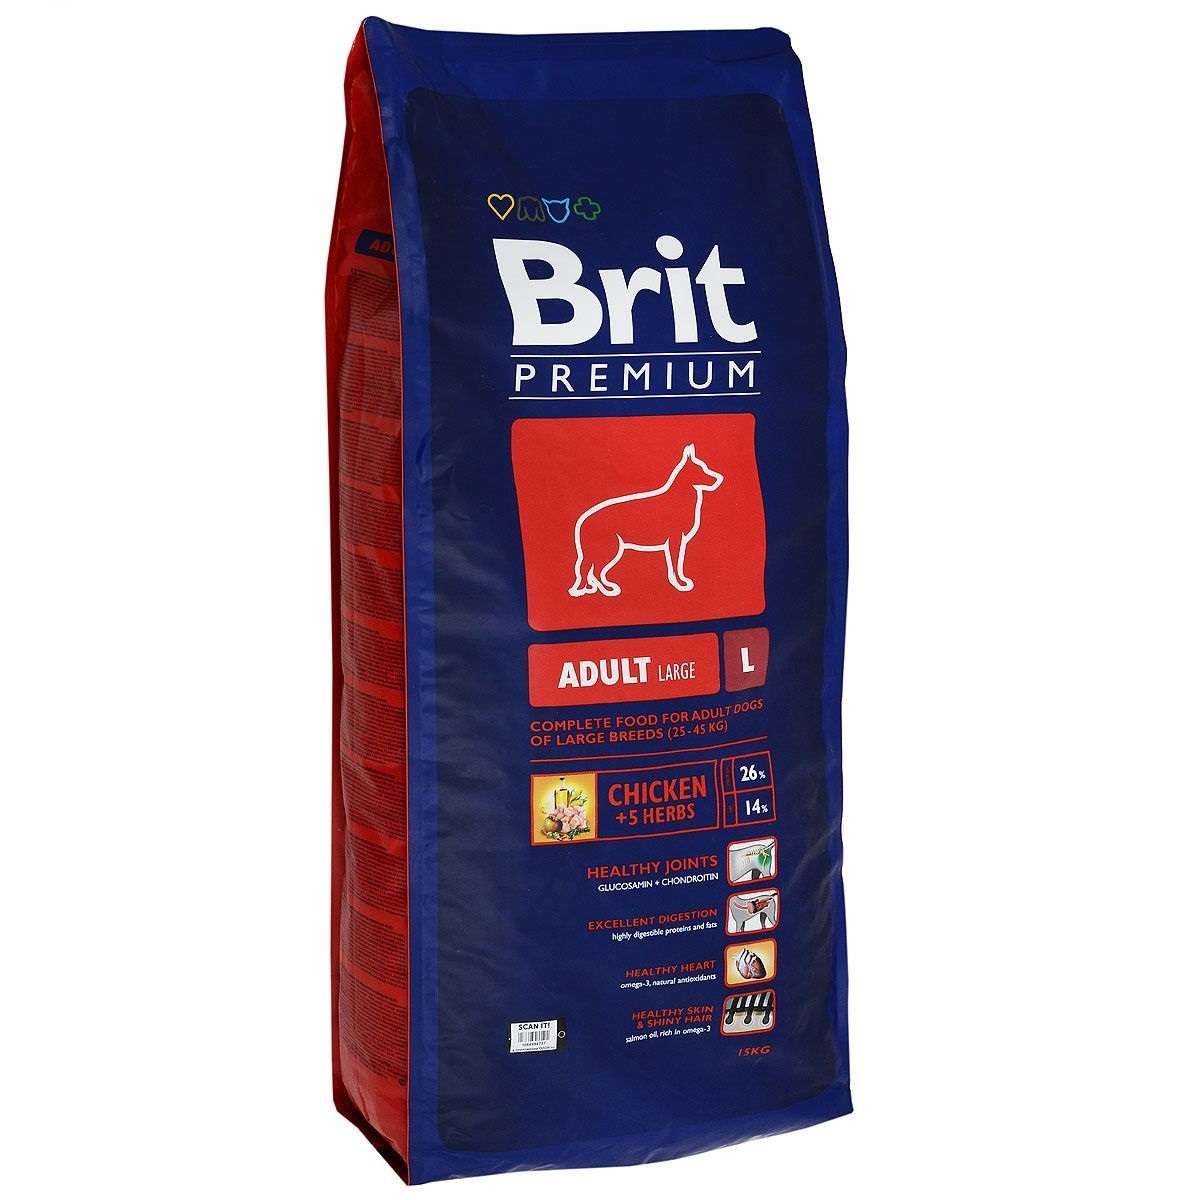 Сухой корм для собак brit. Корм для собак Brit Premium. Сухой корм Brit Premium для собак. Брит премиум by nature Эдалт l, для взрослых собак крупных пород, 15 кг. Корм для щенков Brit Premium курица 3 кг.